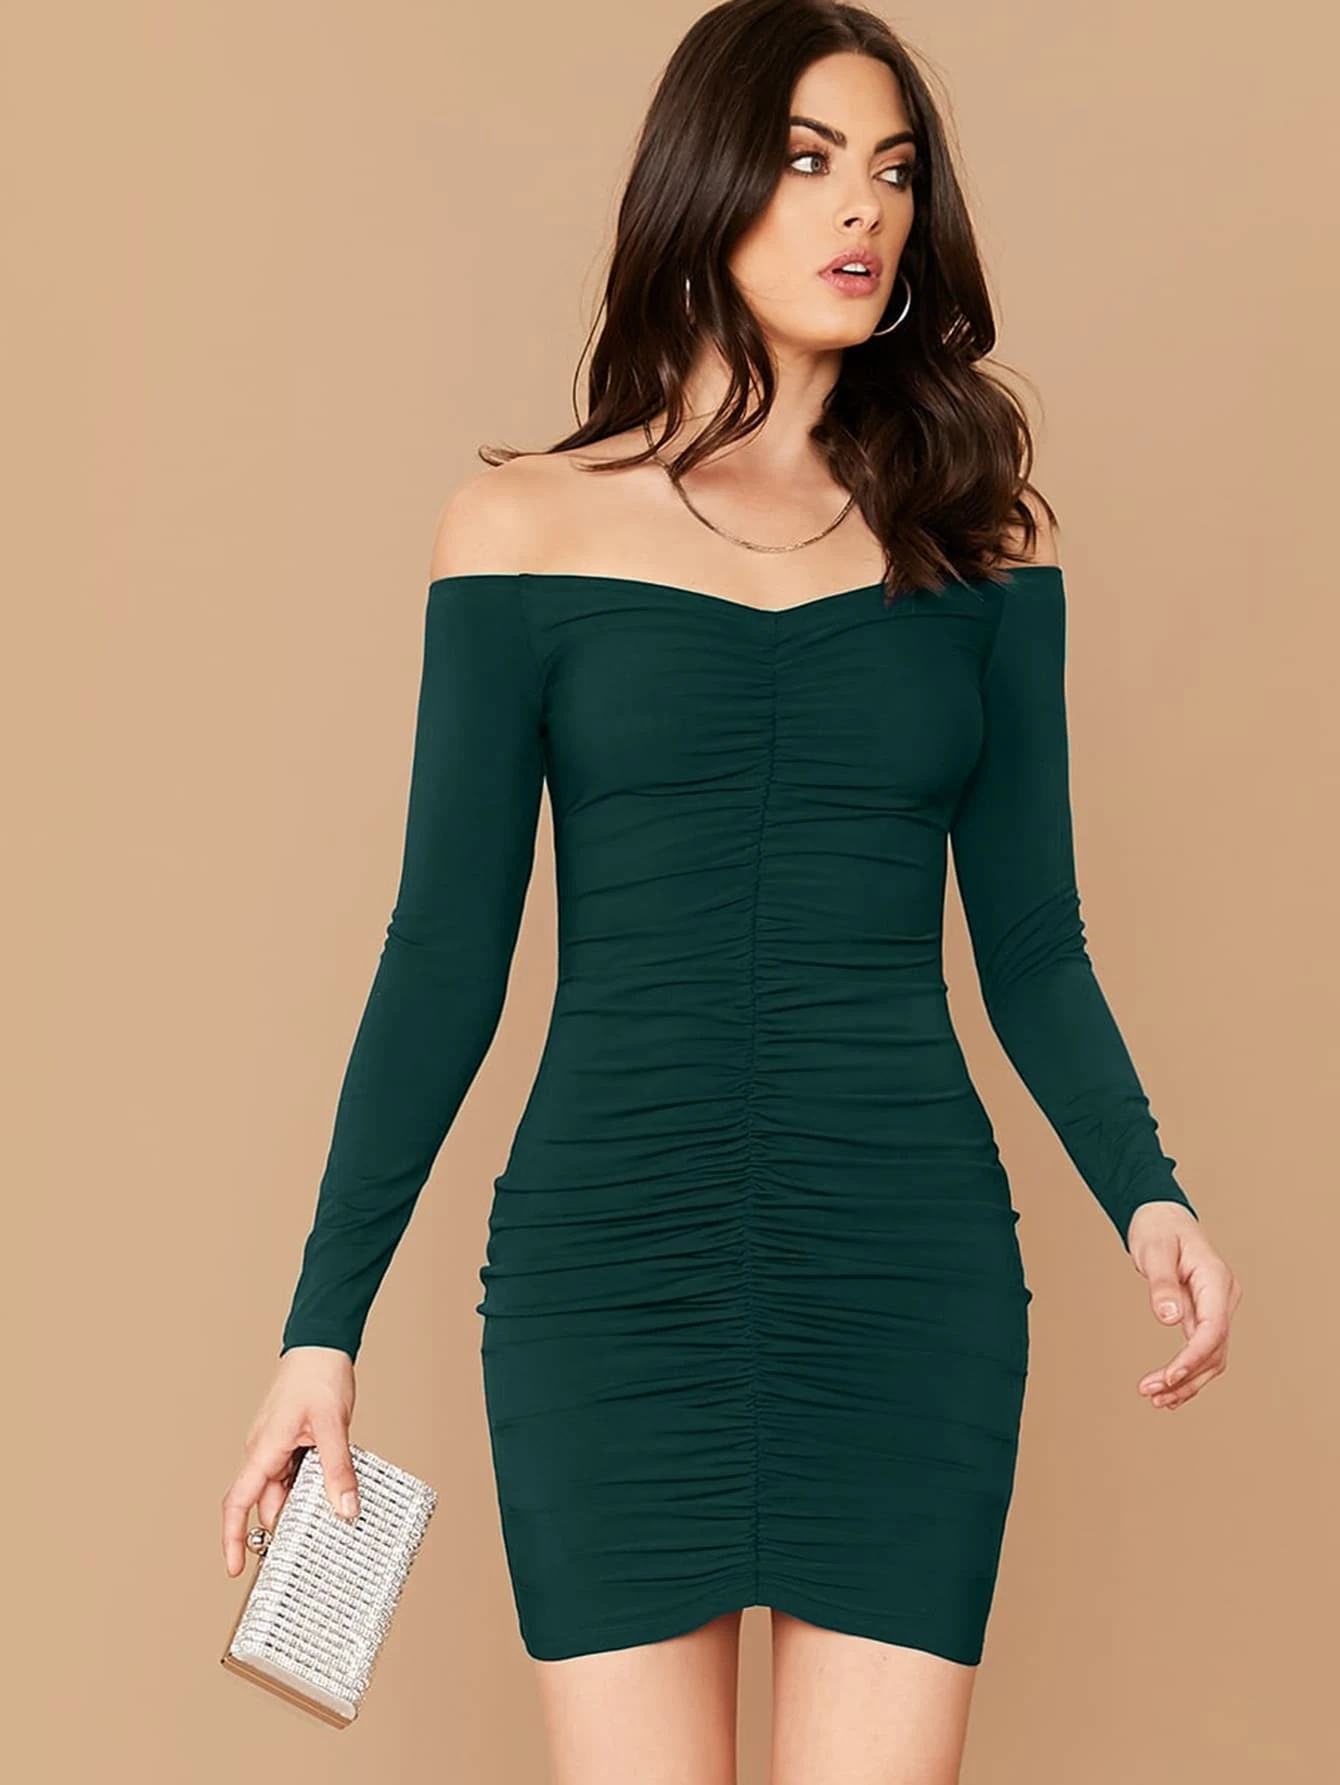 Satin Slim Fit Midi Dress - Multi Colors Available